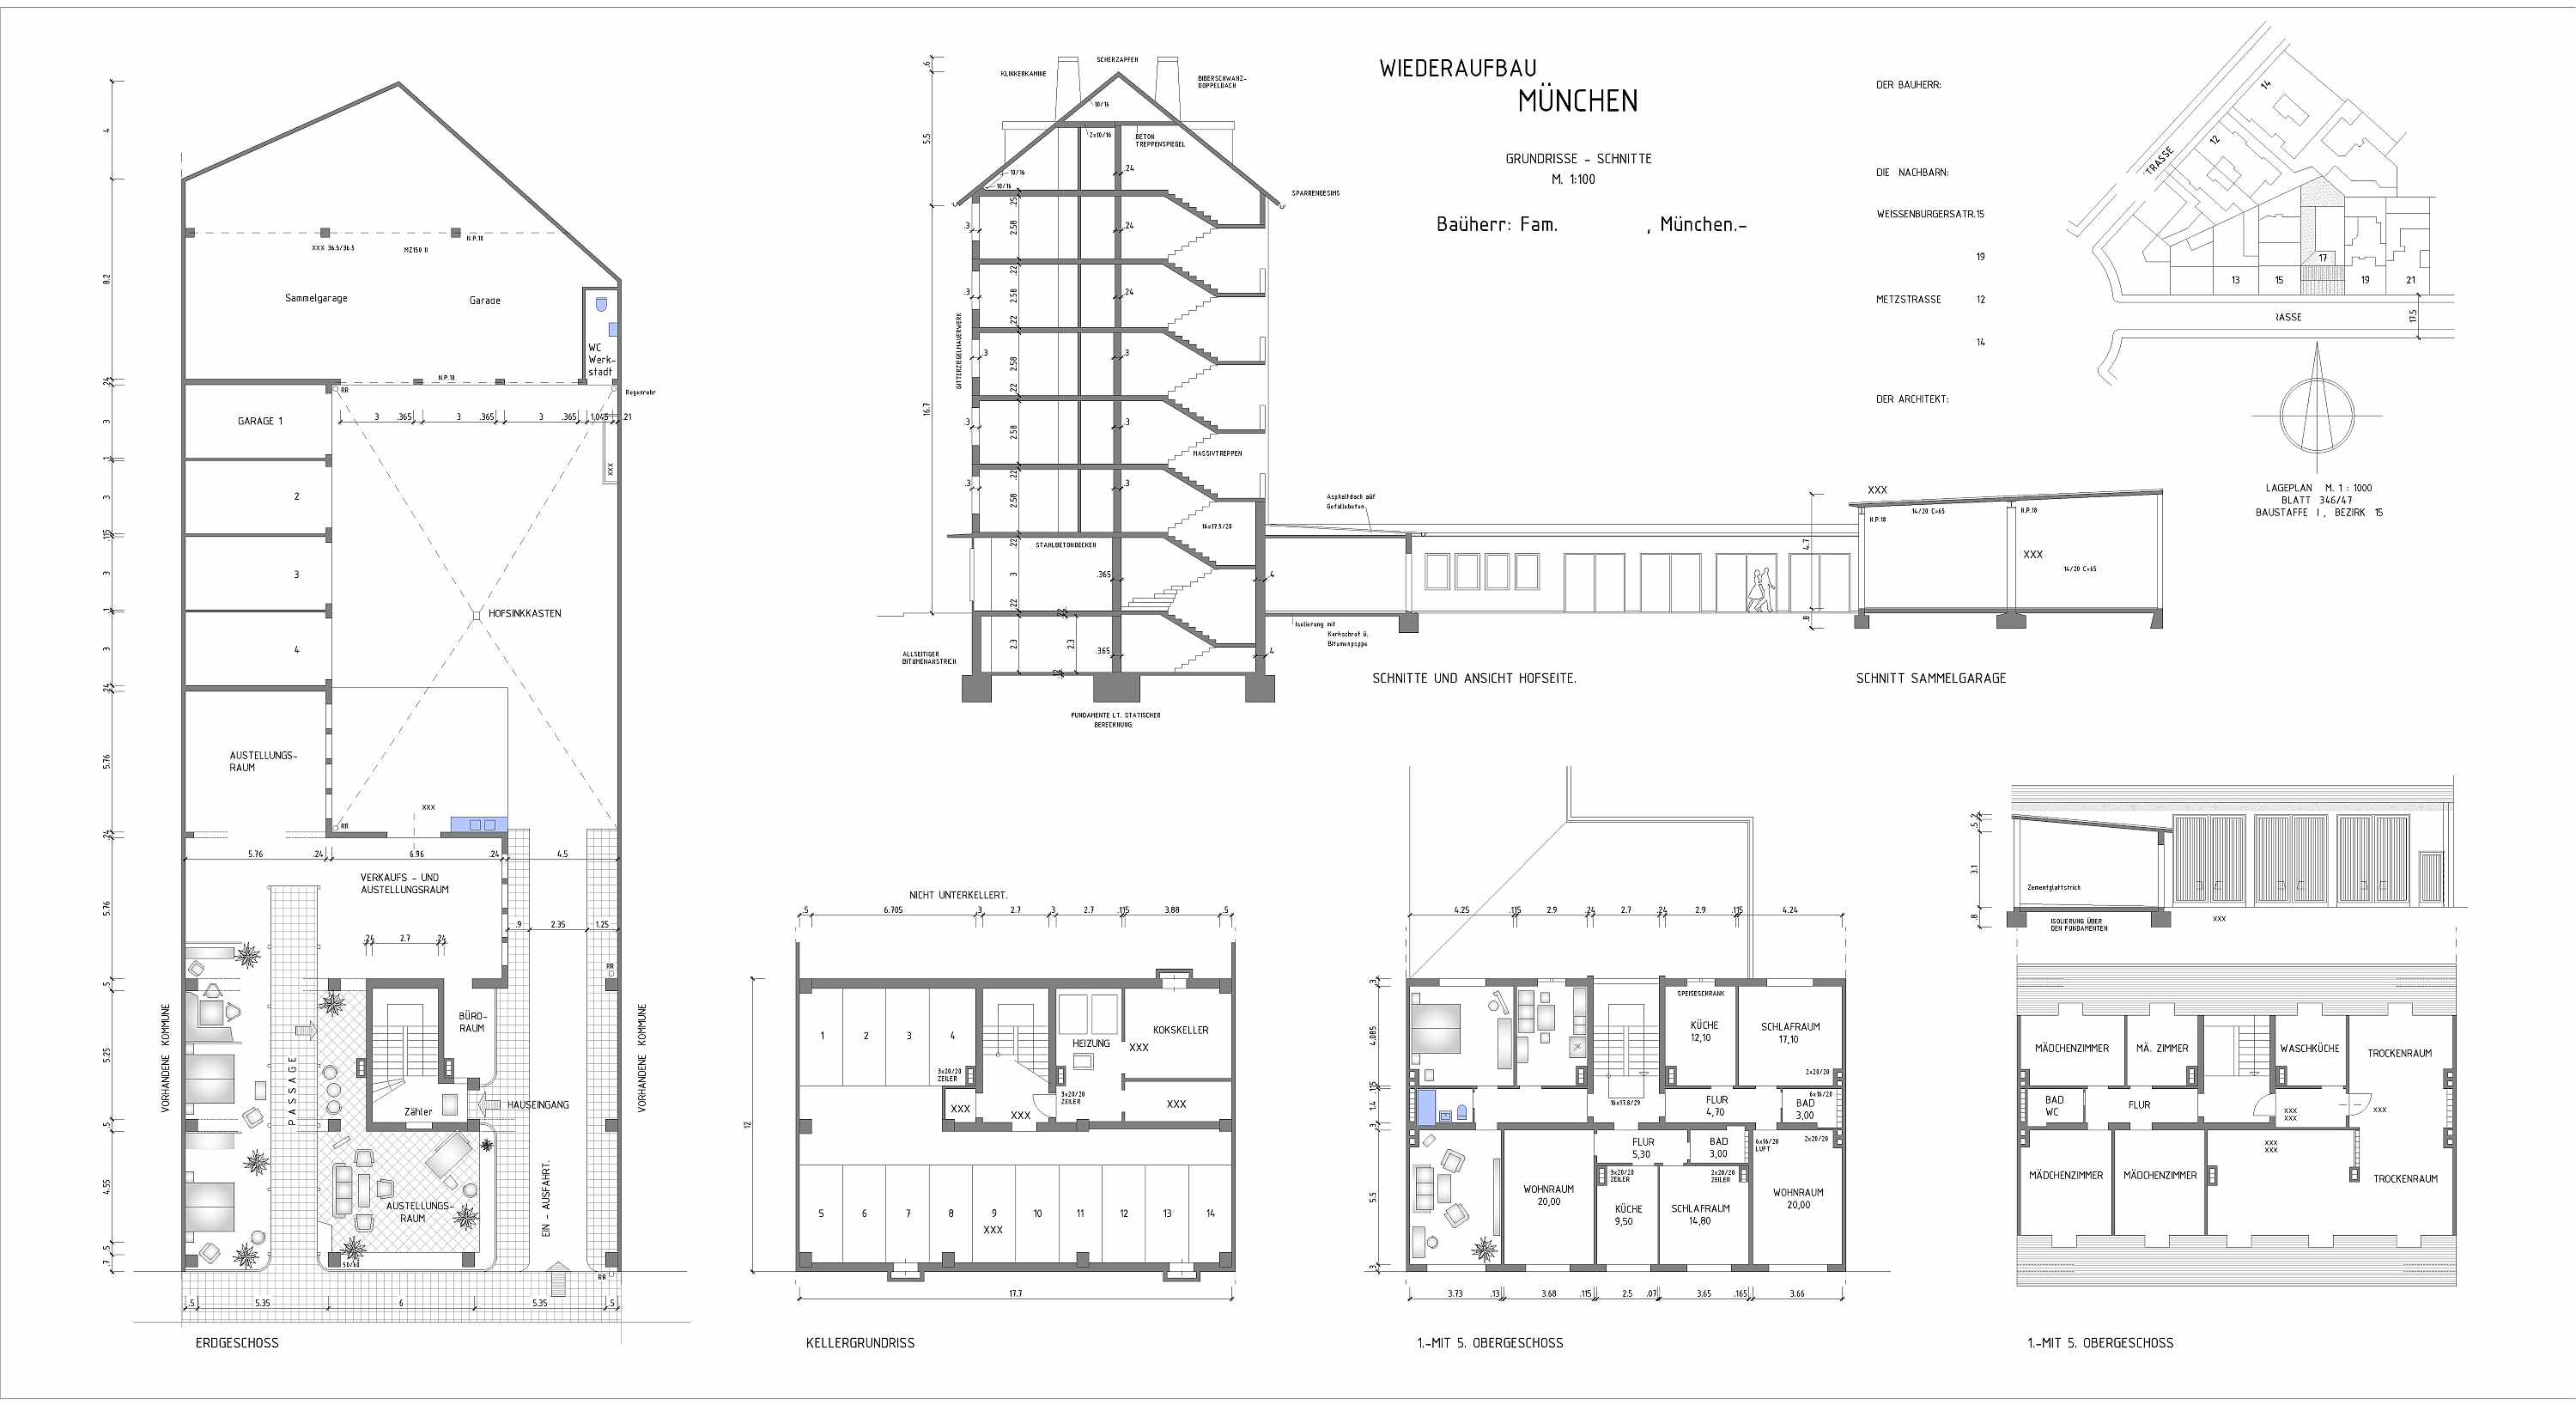 Digitalisierung Pläne. Architekten benötige präzise 2D CAD Pläne für ihre Arbeiten. Hier ein Beispiel zur Digitalisierung eines Gebäudes aus dem Jahr 1956, welcher nur als vergilbter Papierplan vorlag.